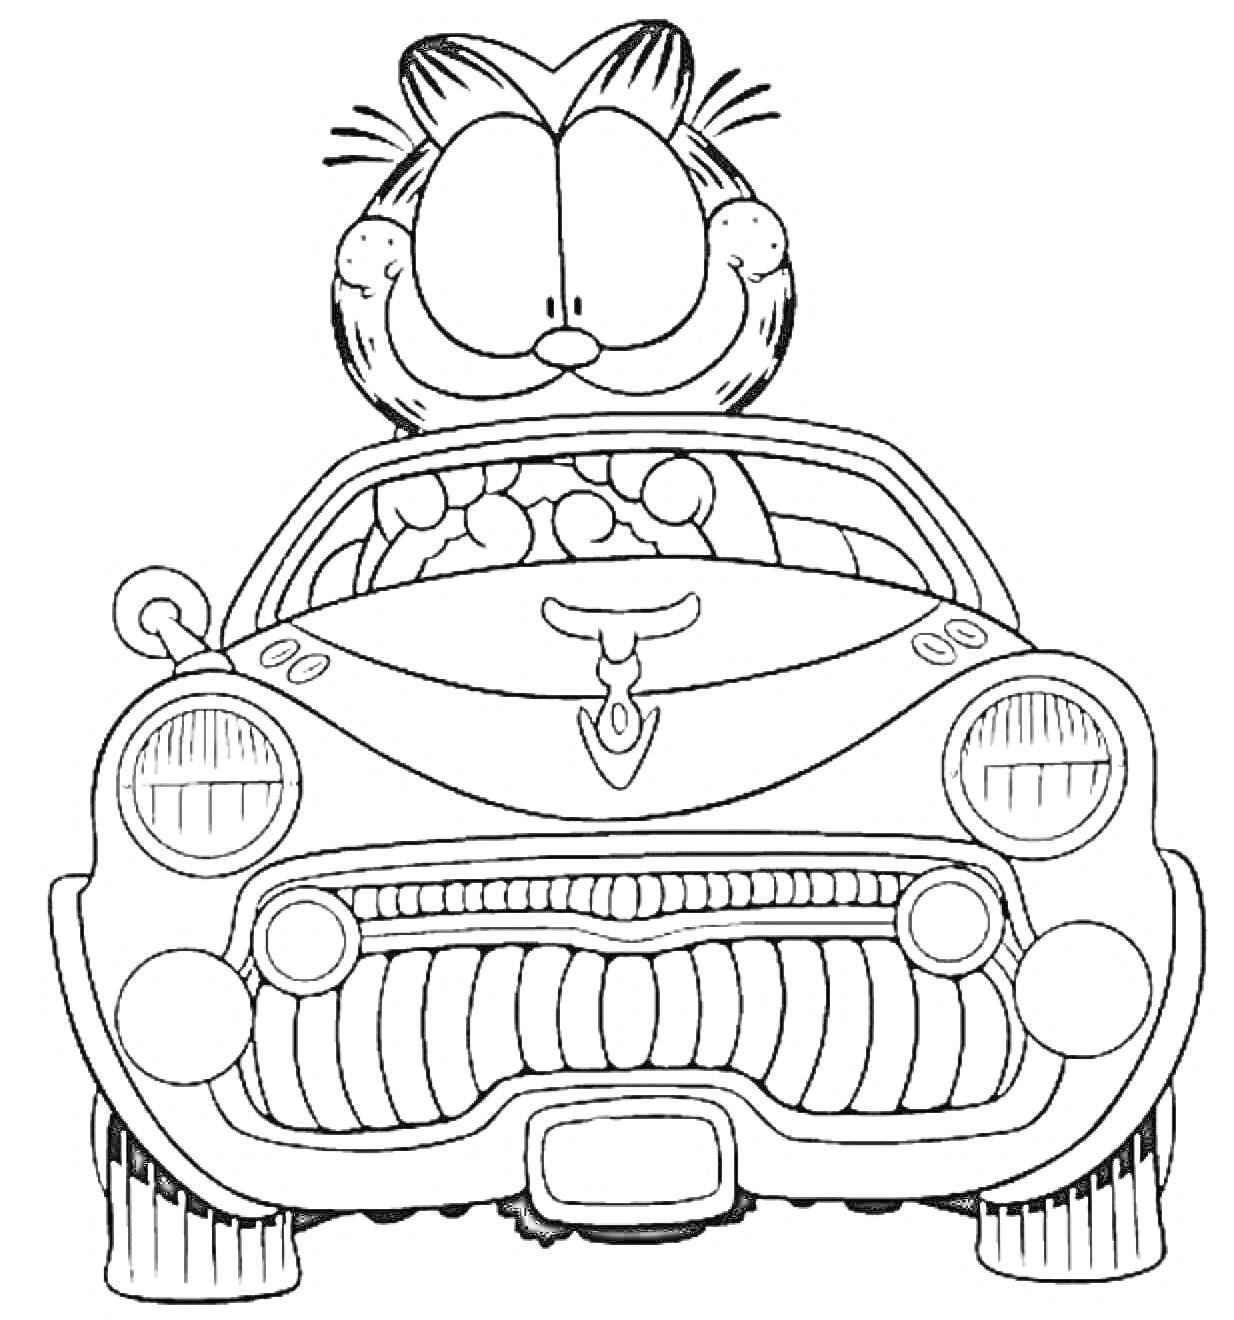 Кот за рулем автомобиля с бычьими рогами на капоте